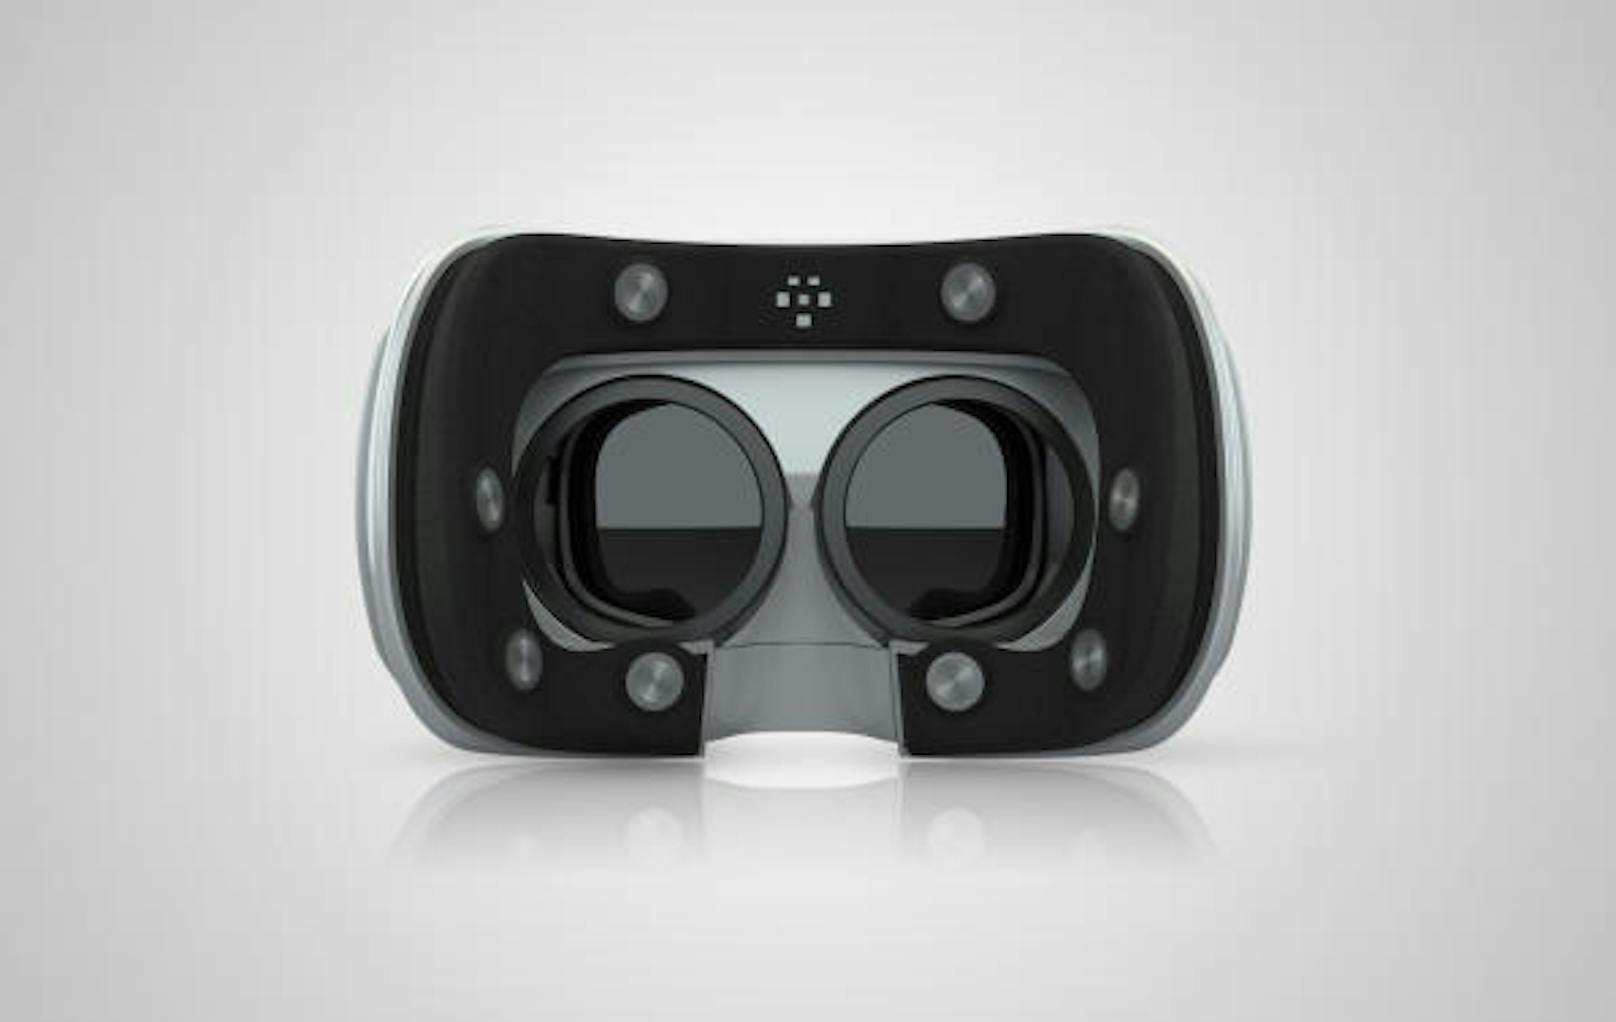 Das neuste Produkt von MindMaze ist eine spezielle Virtual-Reality-Brille namens Mask. Mit den acht Sensoren im Schaumstoffbügel misst die Brille die elektrischen Impulse der Gesichtsmuskulatur. So kann erraten werden, welchen Gesichtsausdruck der Träger gerade hat.